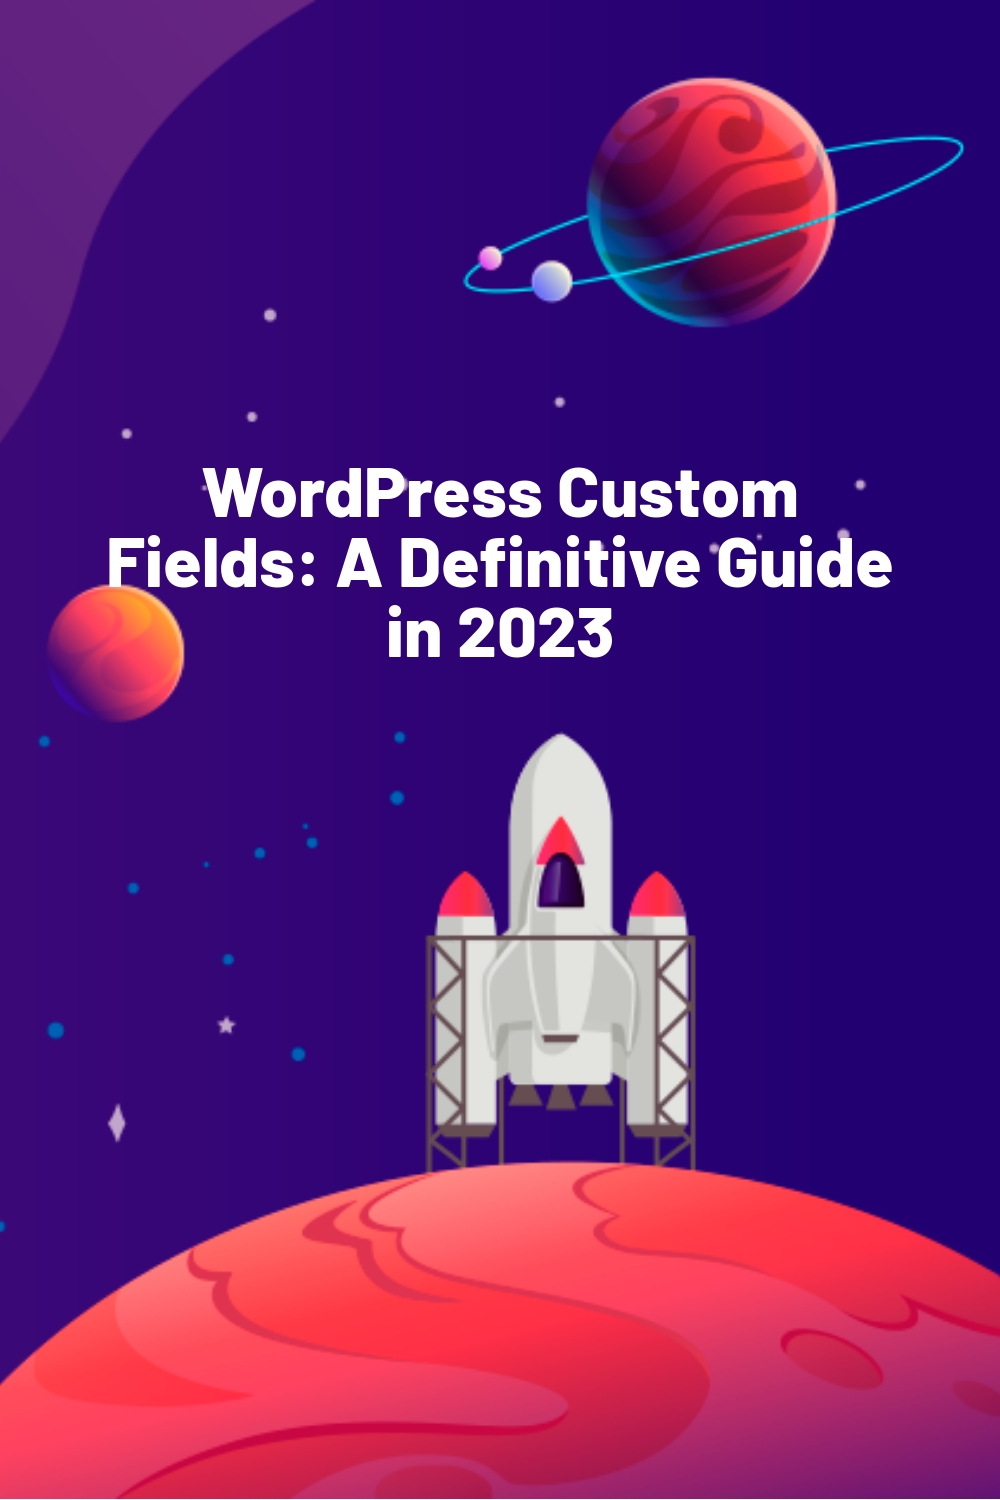 WordPress Custom Fields: A Definitive Guide in 2023